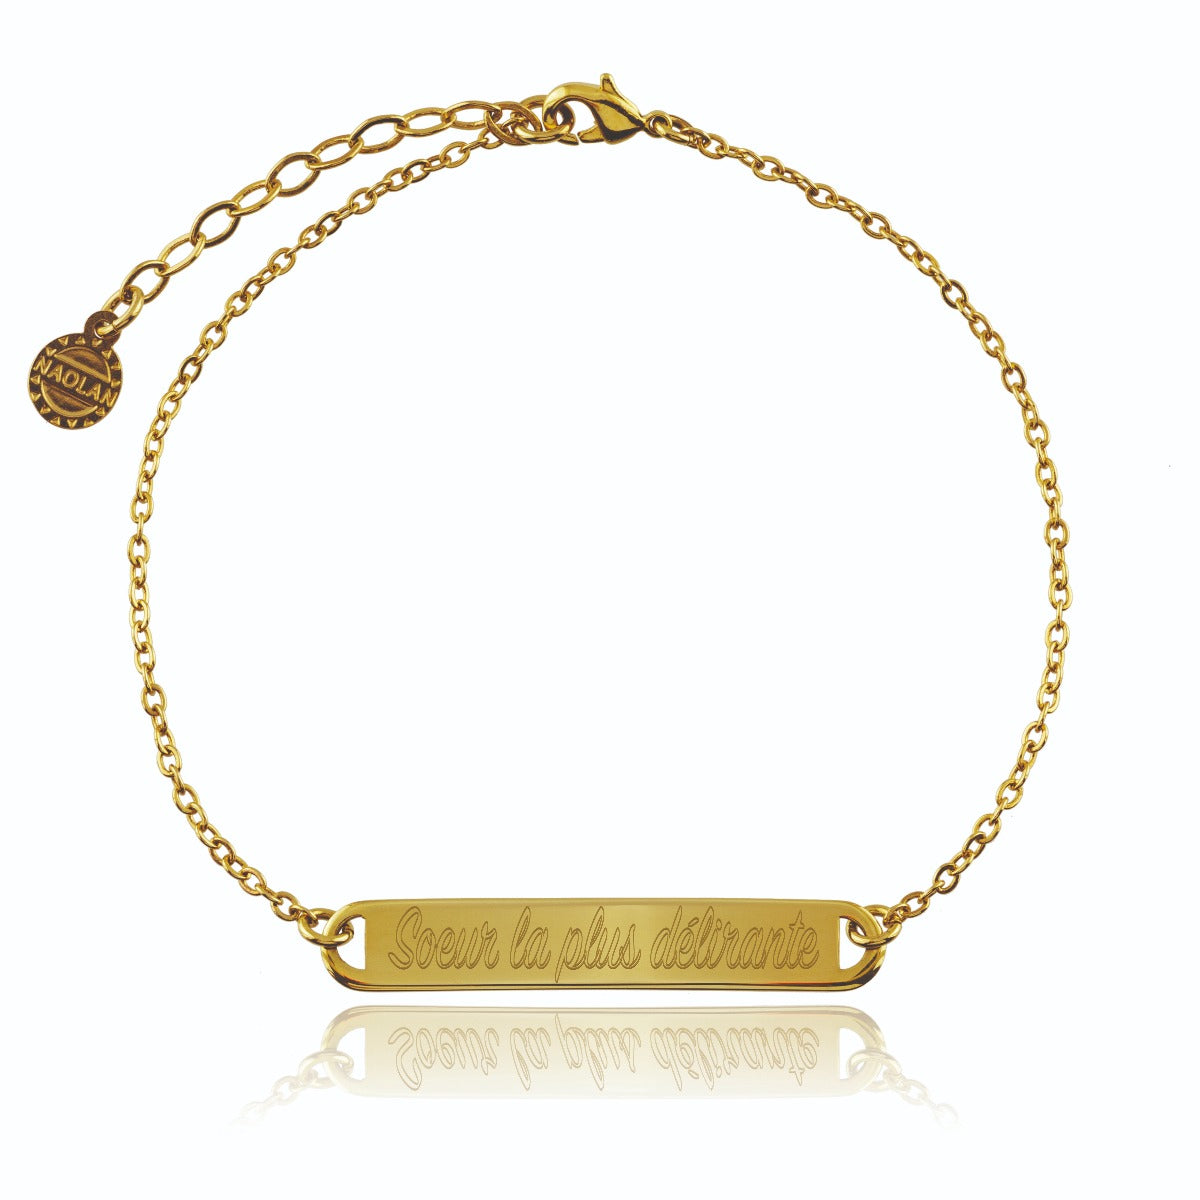 Bracelet chaine soeur la plus délirante or